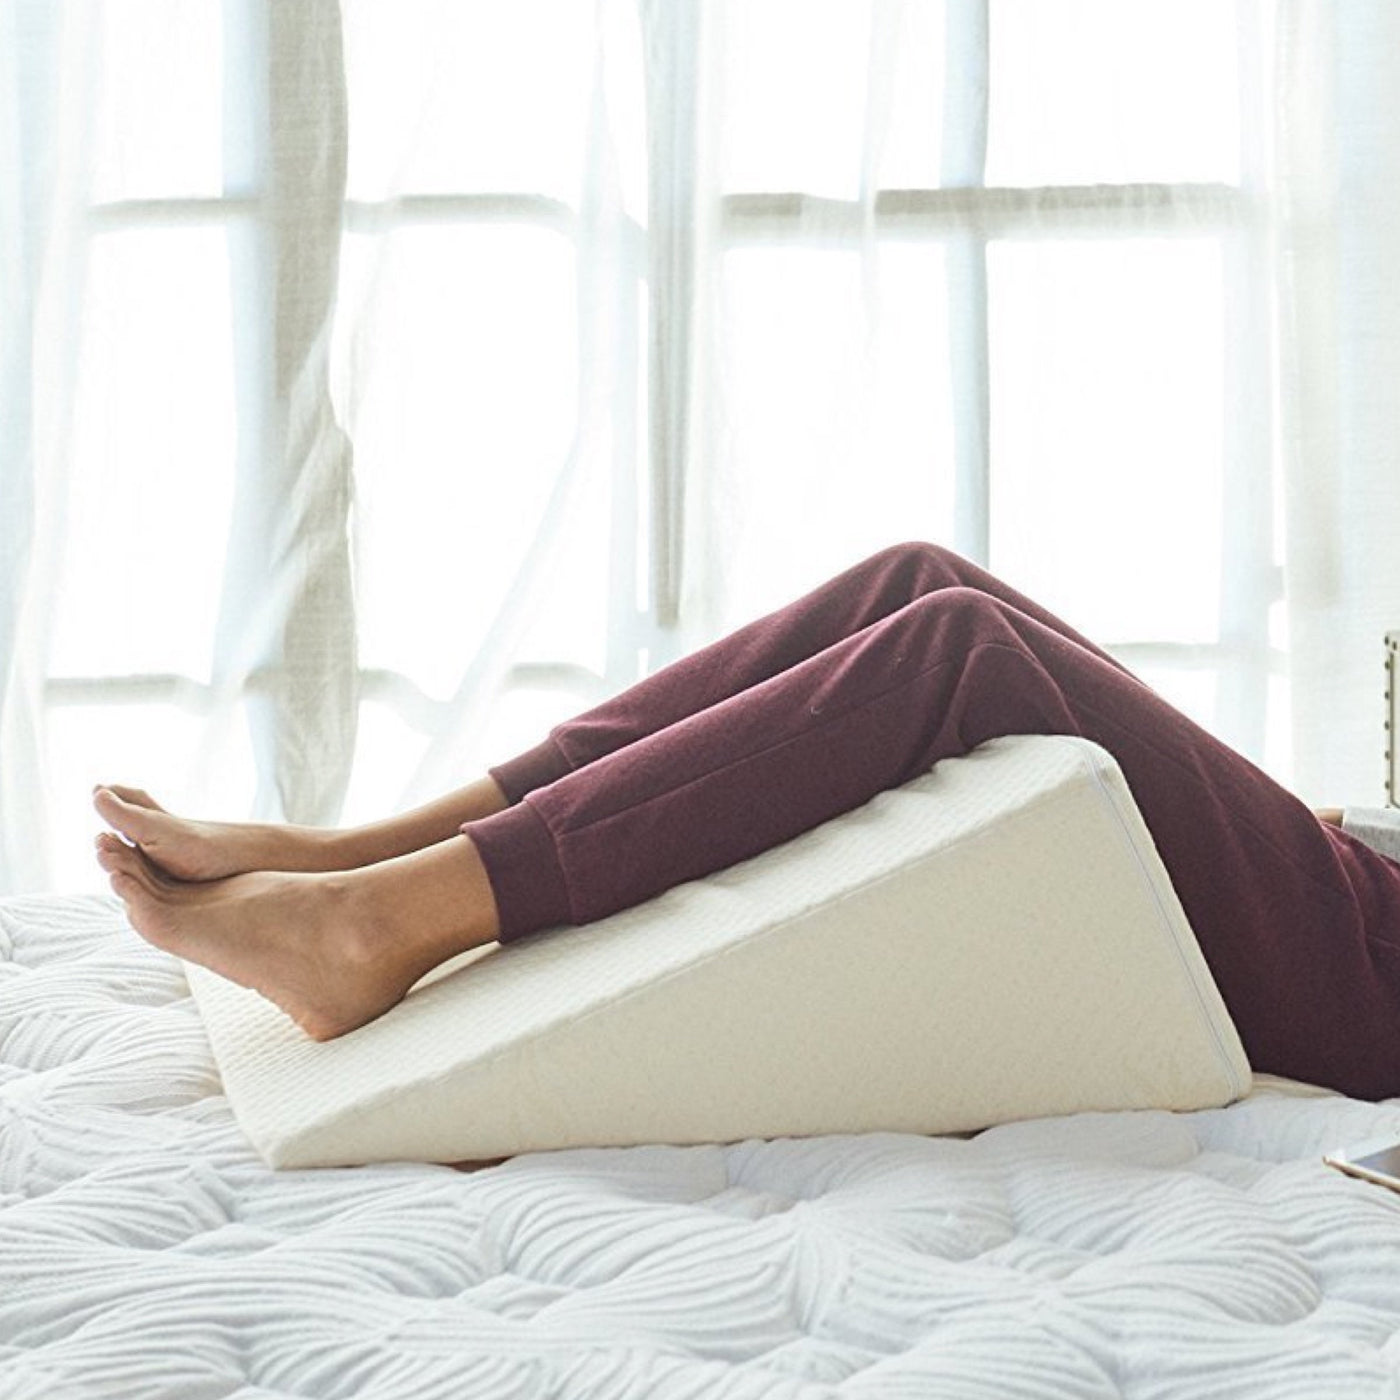 Zen Bamboo Elevating Leg Rest Pillow Memory Foam Leg Rest Pillow - Reduces Back